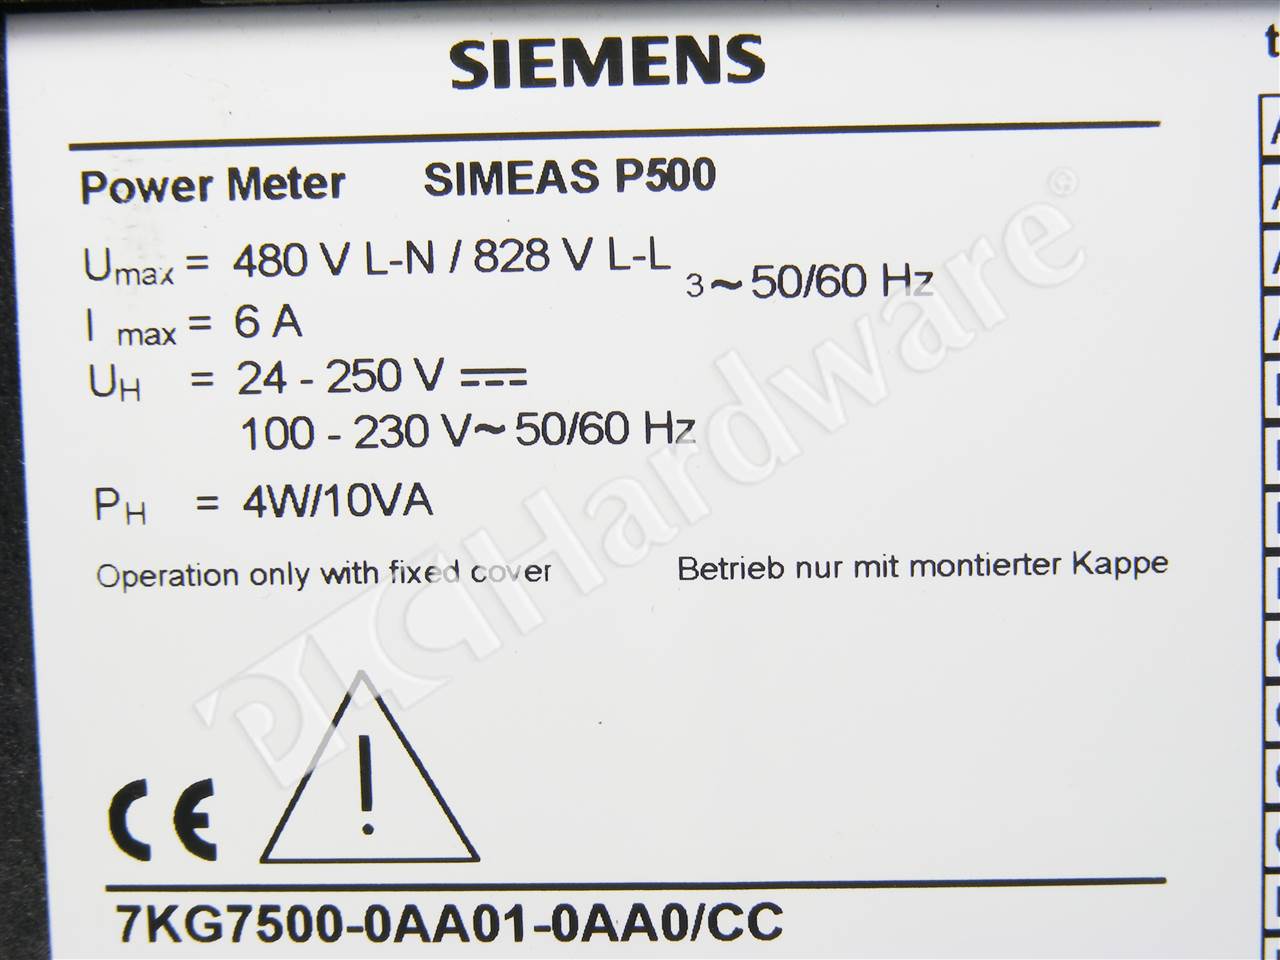 Siemens Simeas P500 7KG7500-0AA01-0AA0 CC Power Meter 